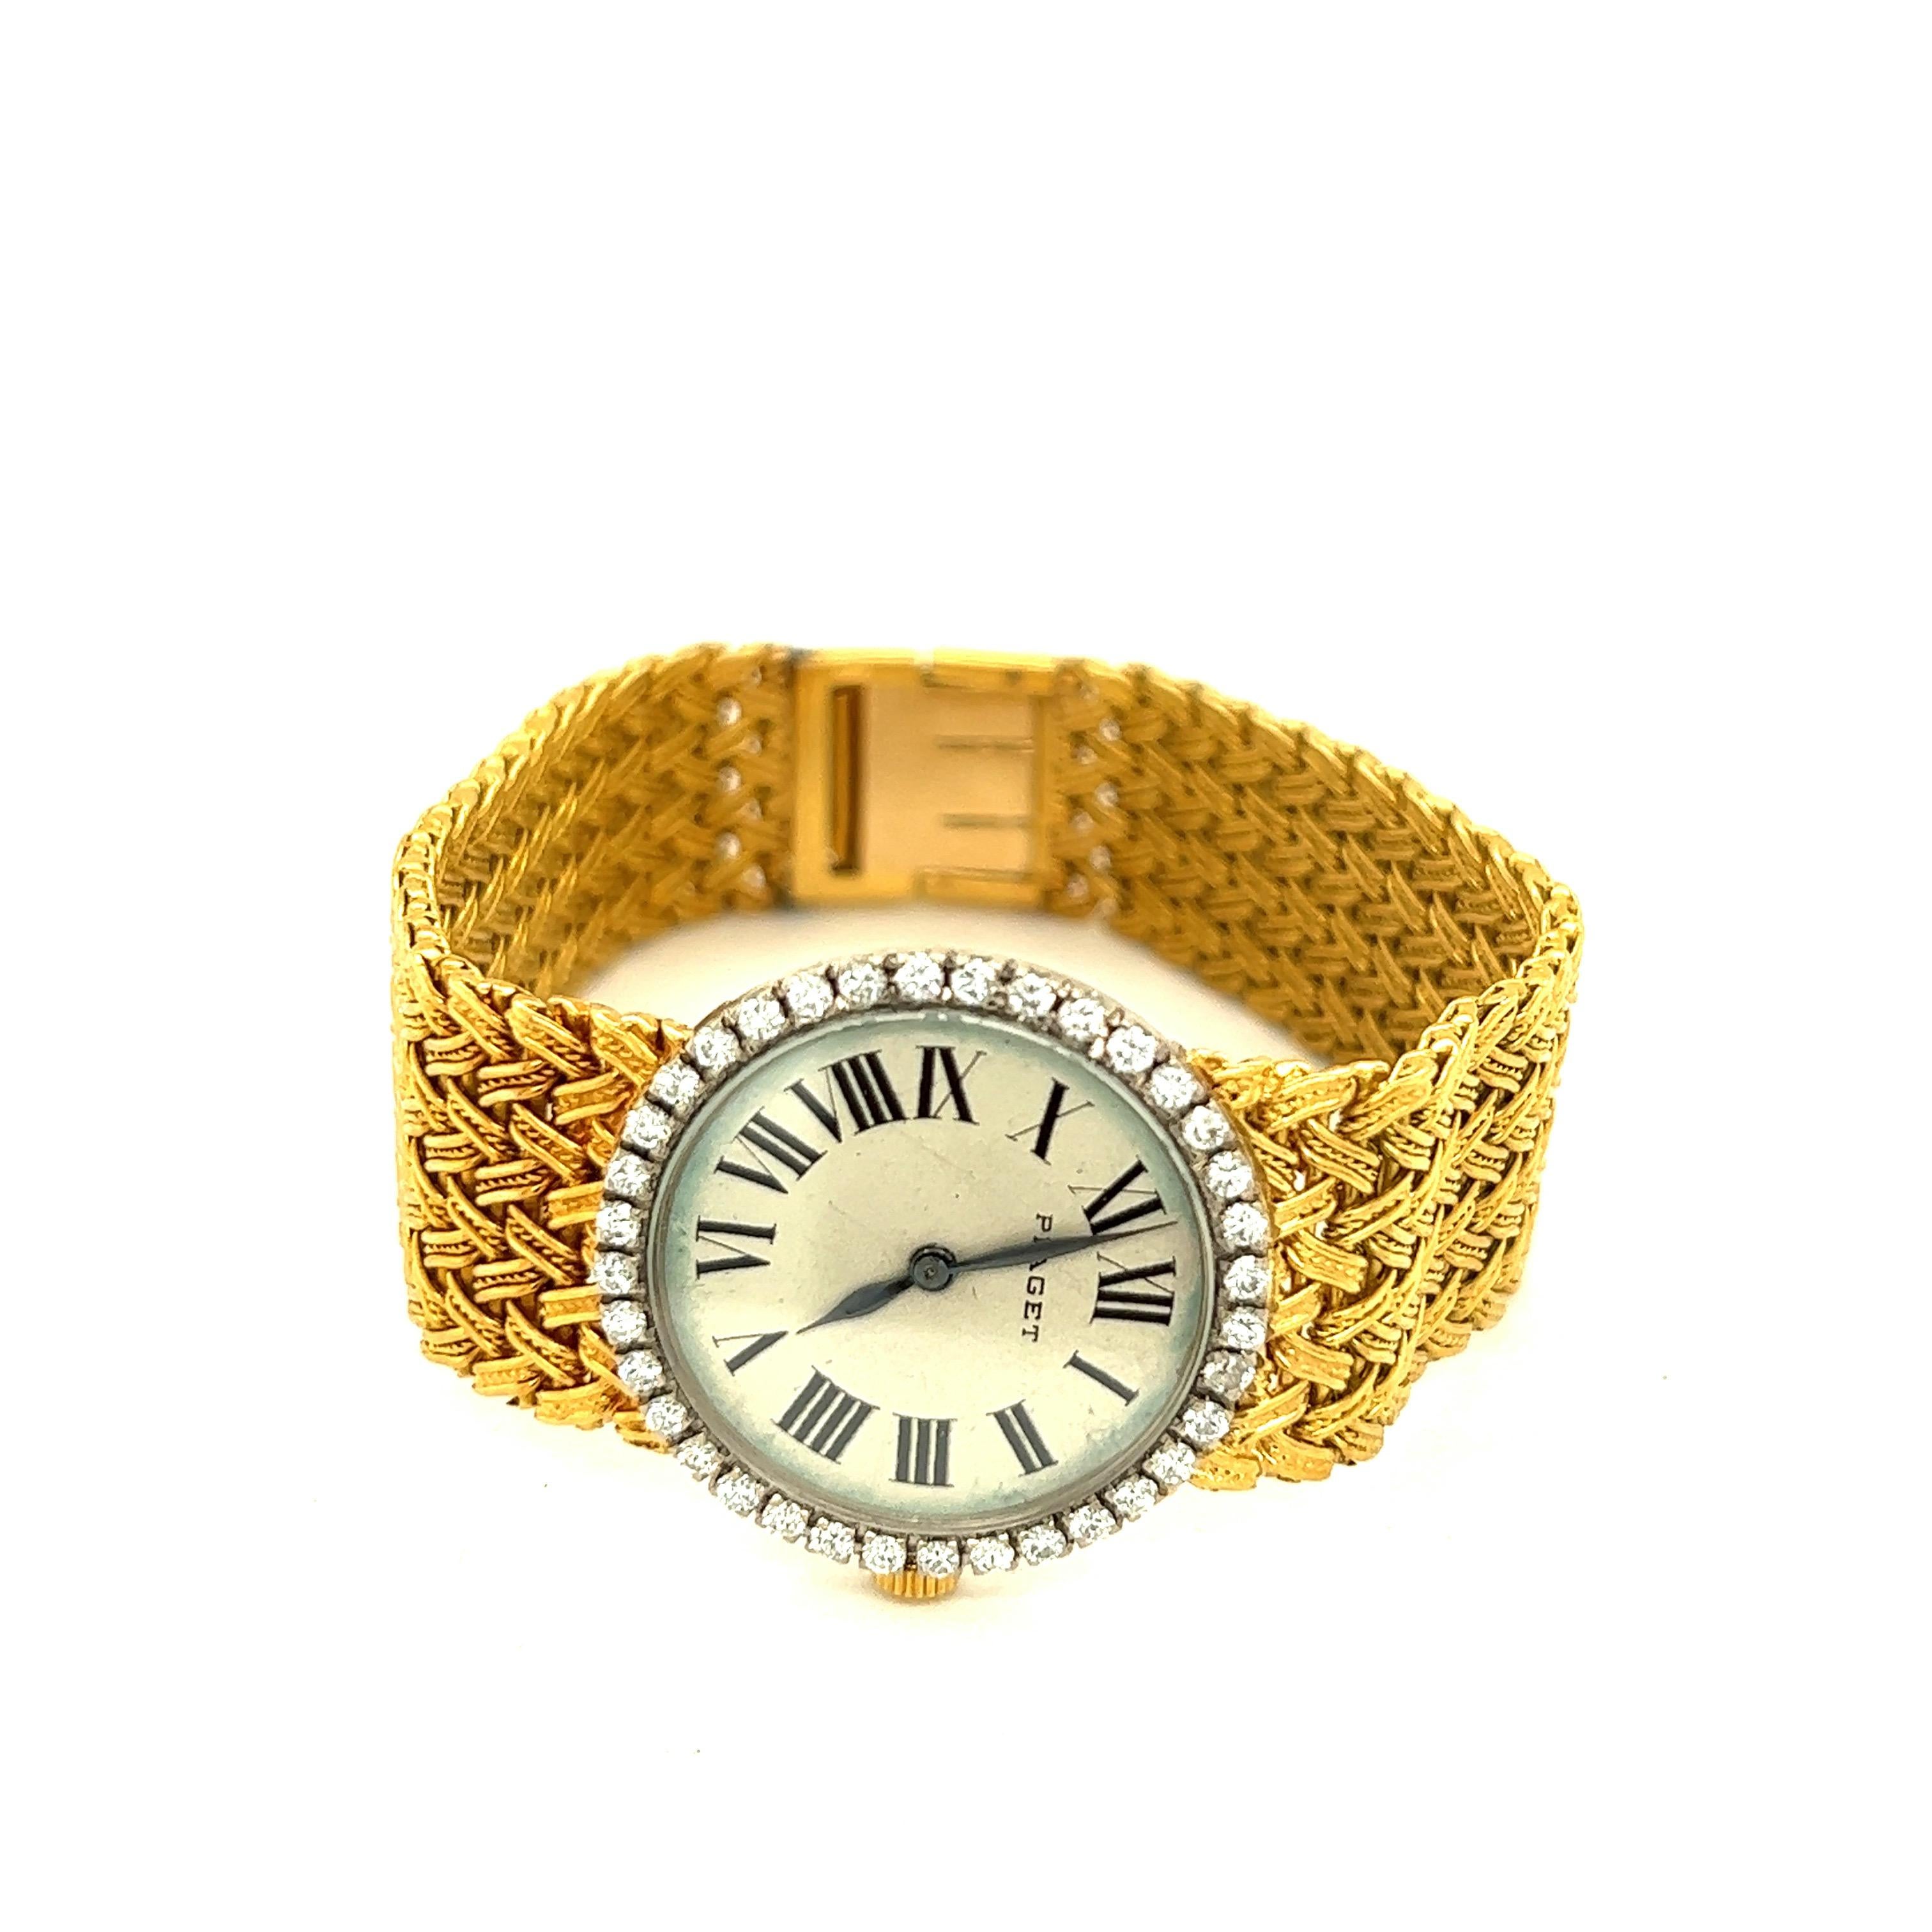 Montre-bracelet pour dame en or jaune 18k avec diamants Piaget

Boîtier de forme ronde (2 cm) garni de 36 diamants taille ronde d'environ 0,72 carat au total, avec chiffres romains pour l'heure ; accompagné de bracelets en or jaune 18 carats avec